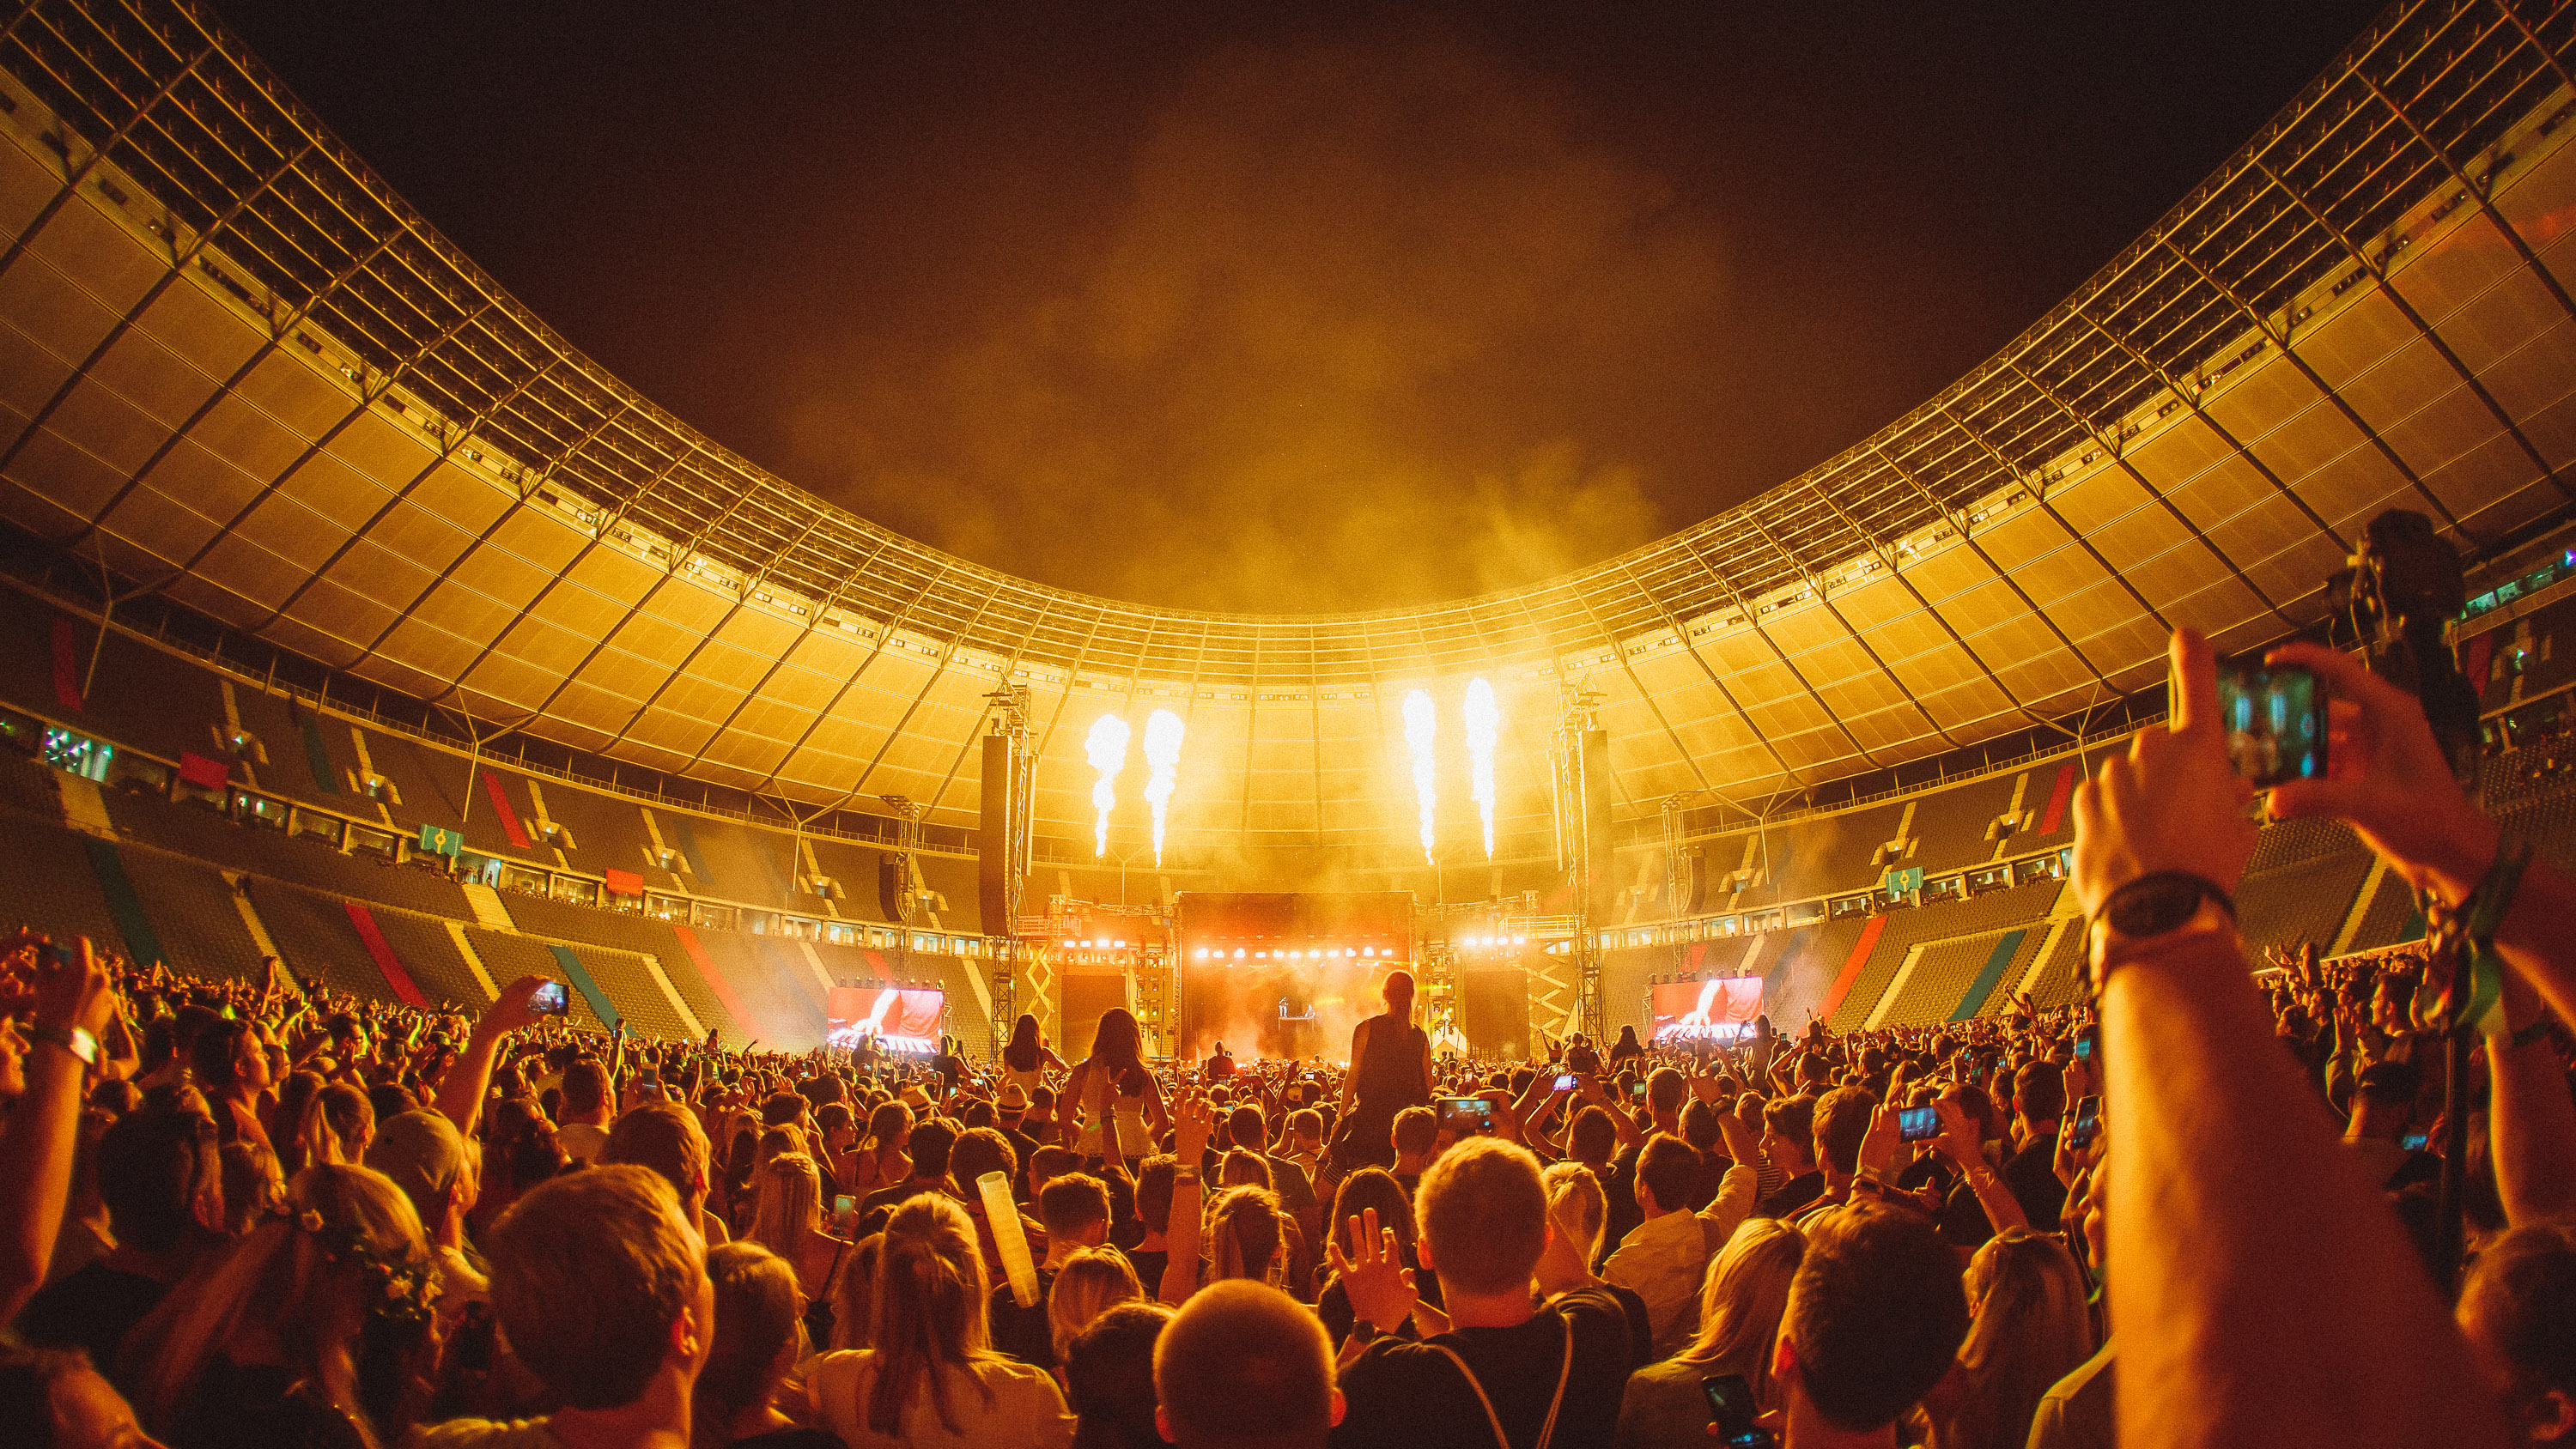 Lollapalooza Berlin 2019 maakt line-up compleet met Rita Ora en meer | Festileaks.com3000 x 1688